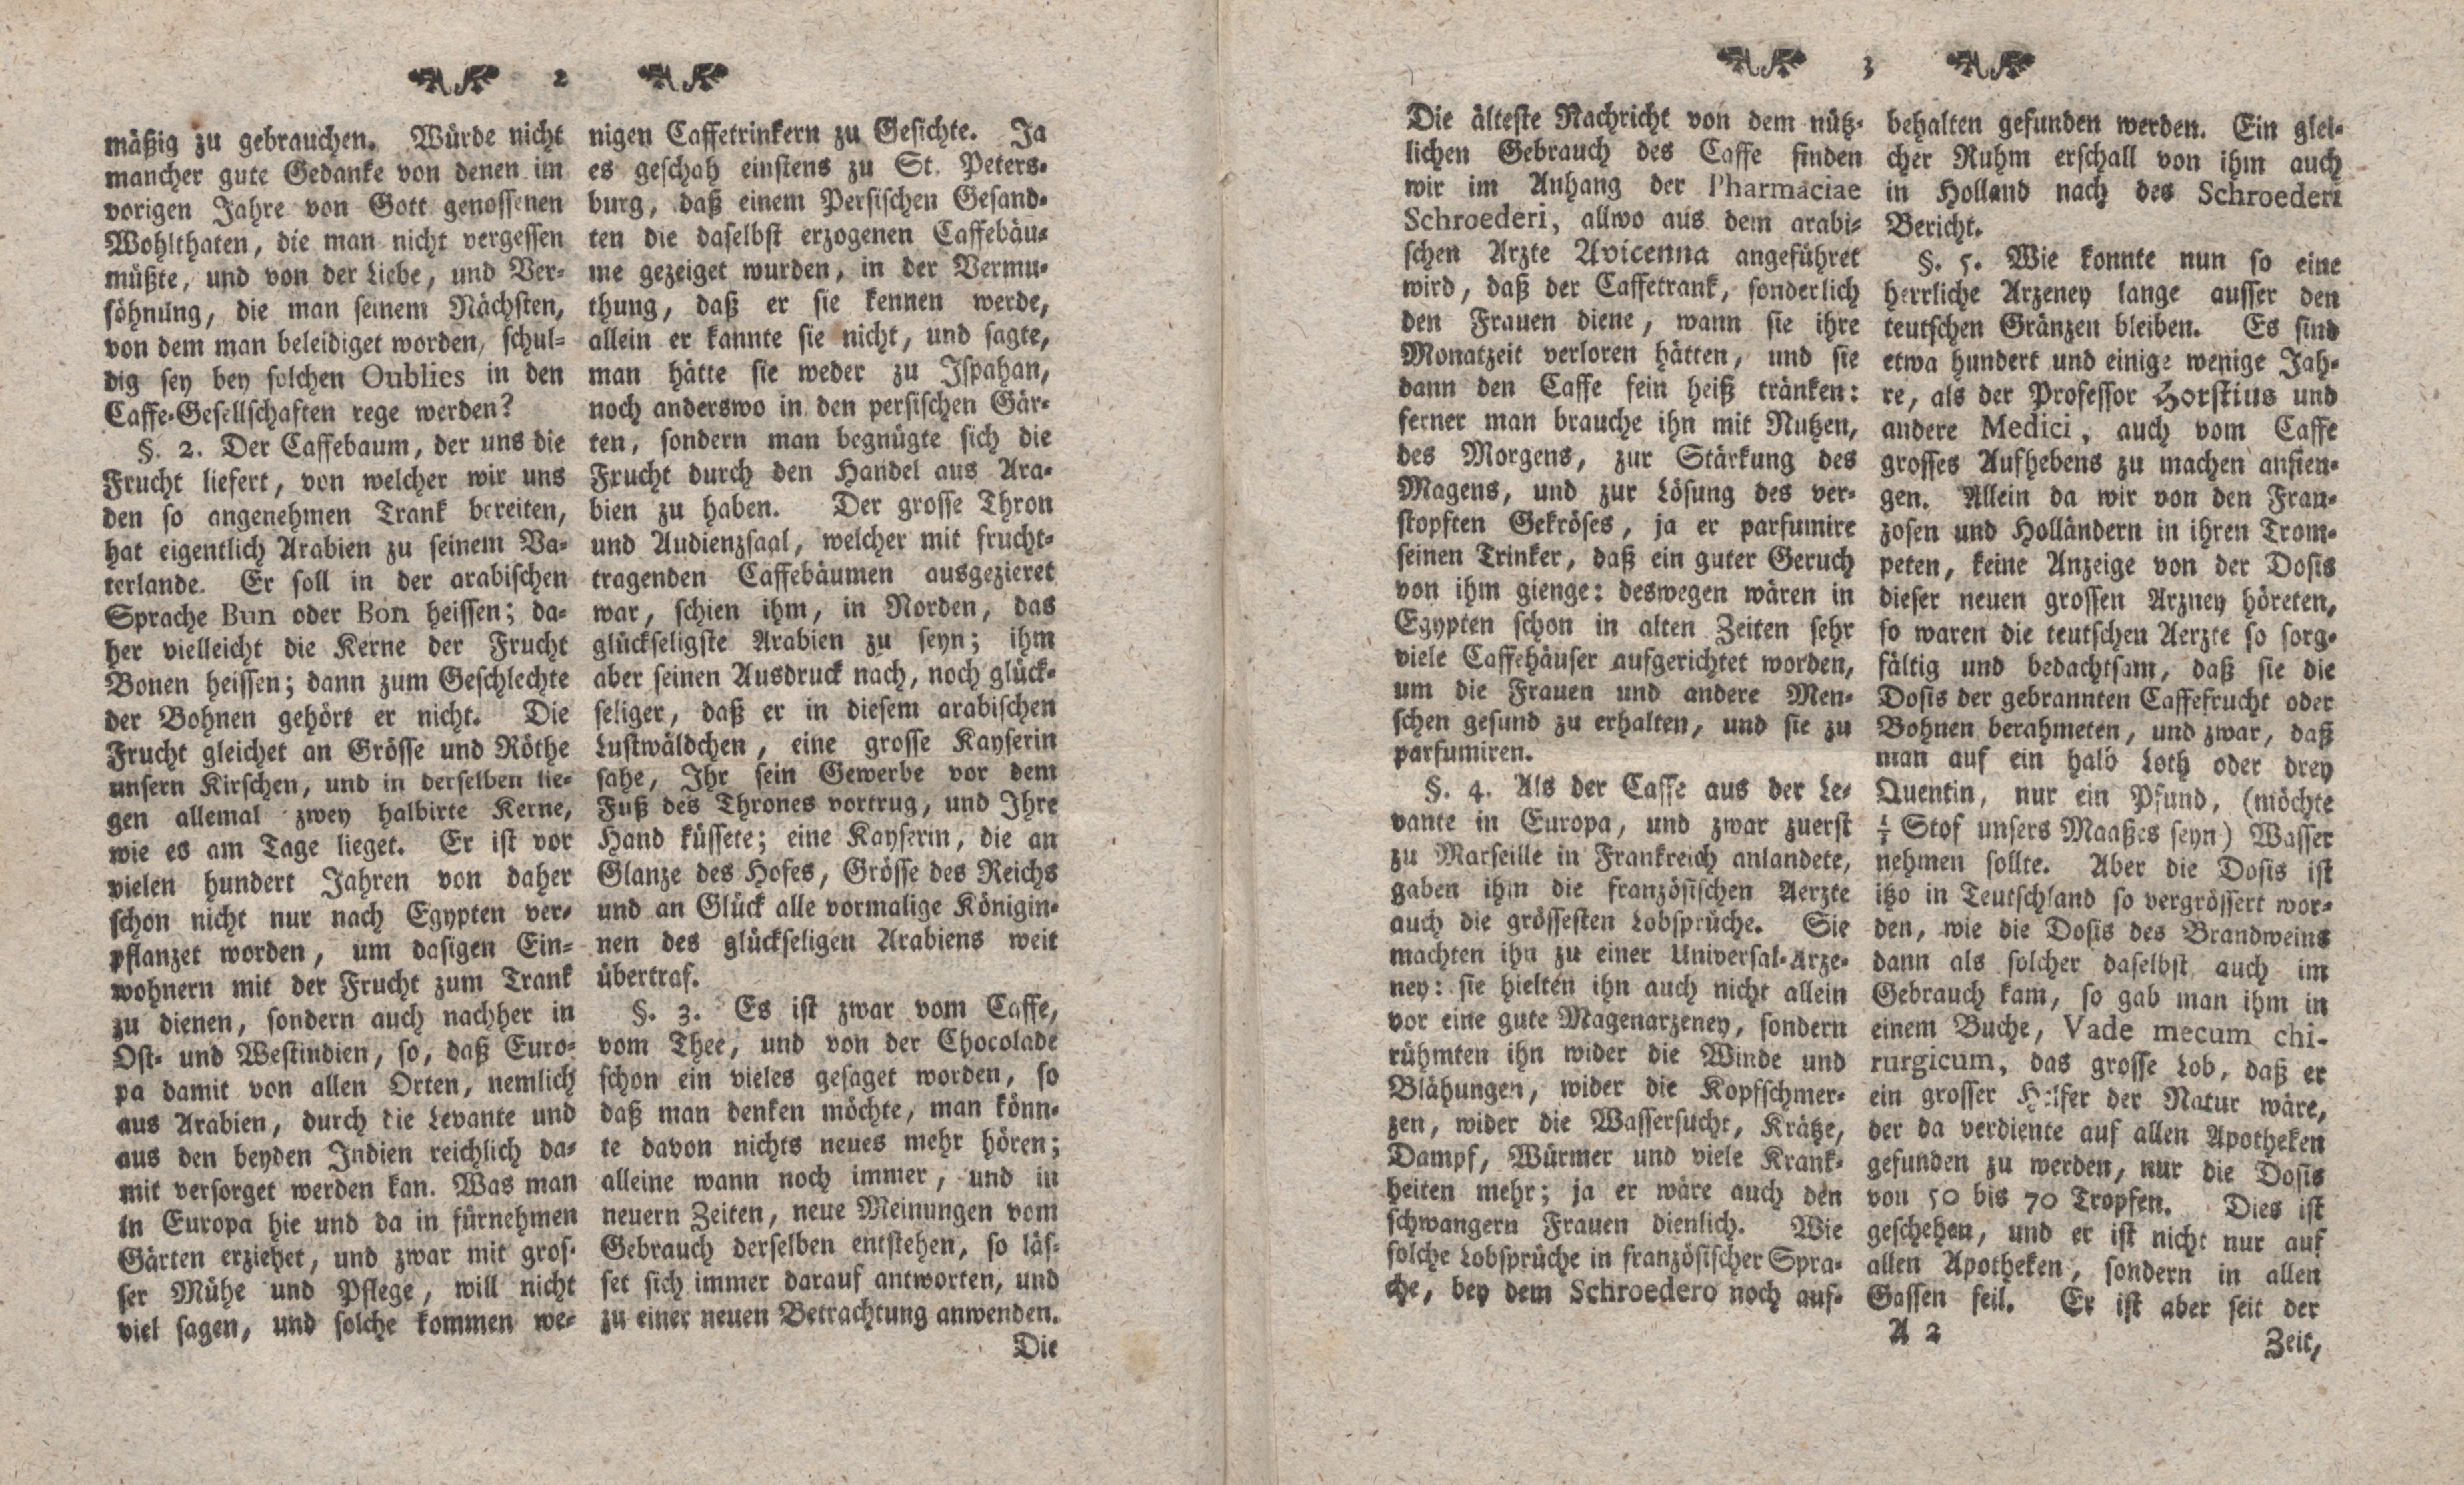 Gelehrte Beyträge zu den Rigischen Anzeigen 1763 (1763) | 2. (2-3) Main body of text